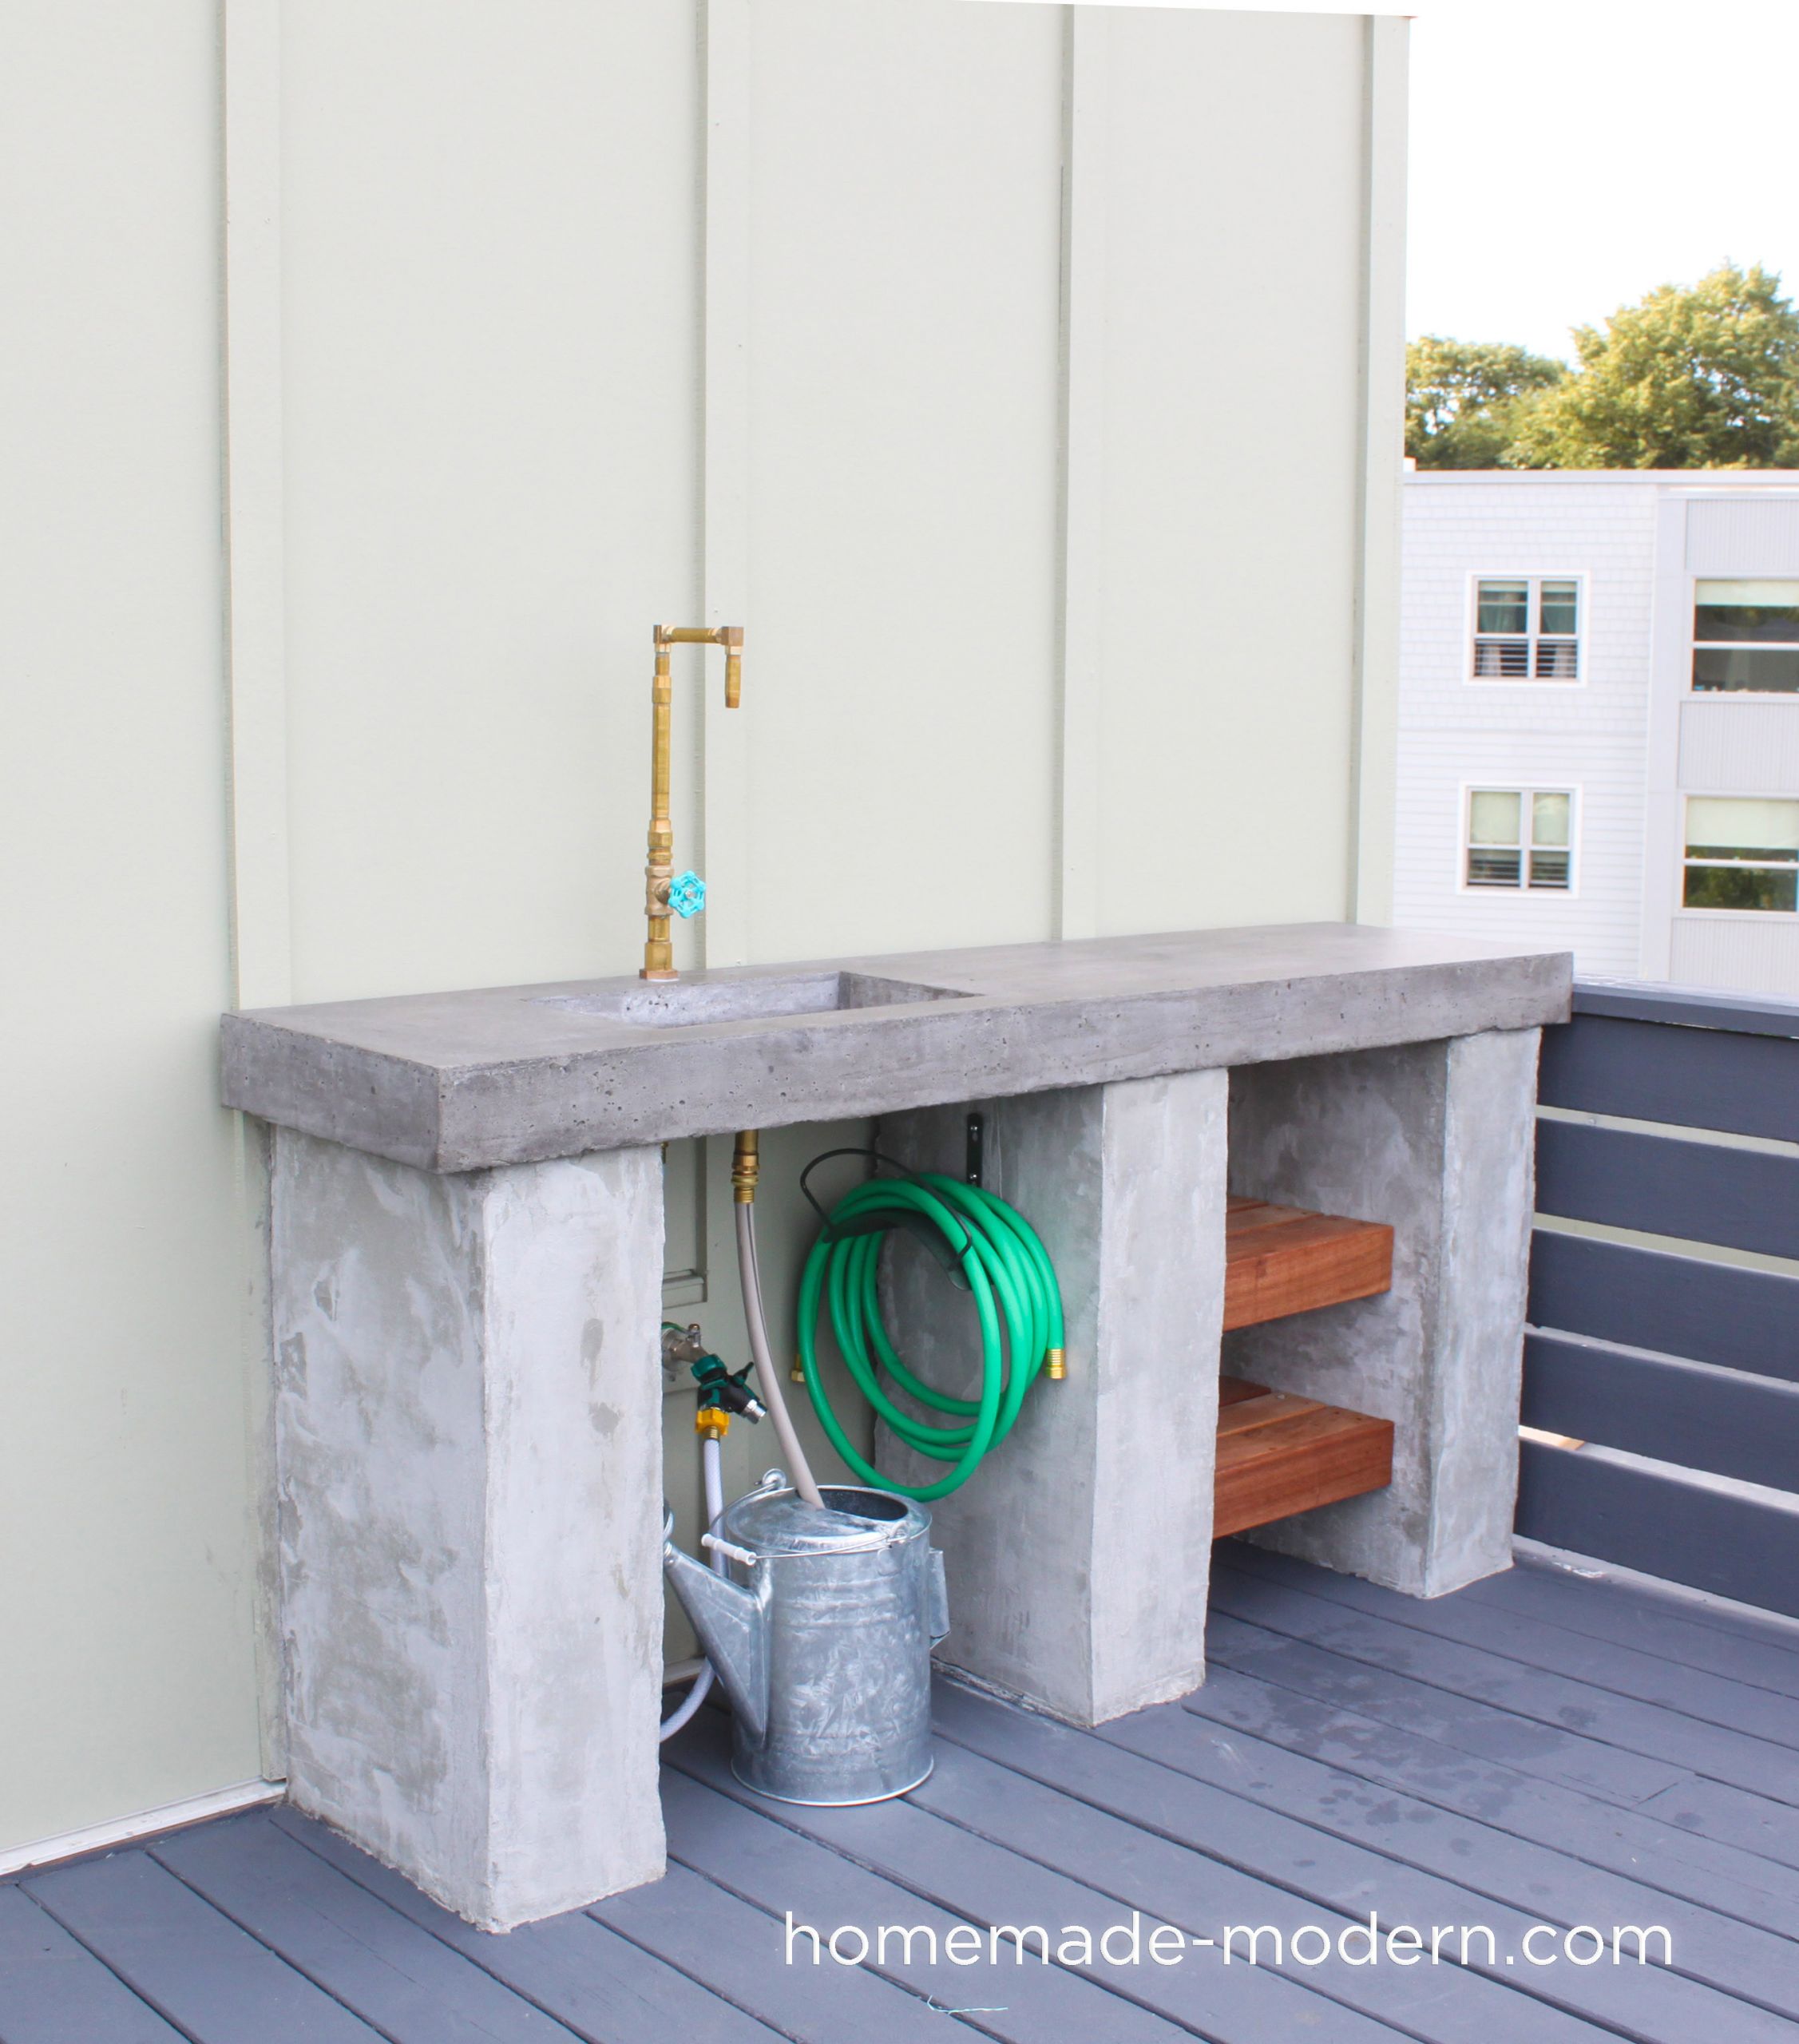 DIY Outdoor Concrete Countertop
 HomeMade Modern EP96 DIY Outdoor Kitchen with Concrete